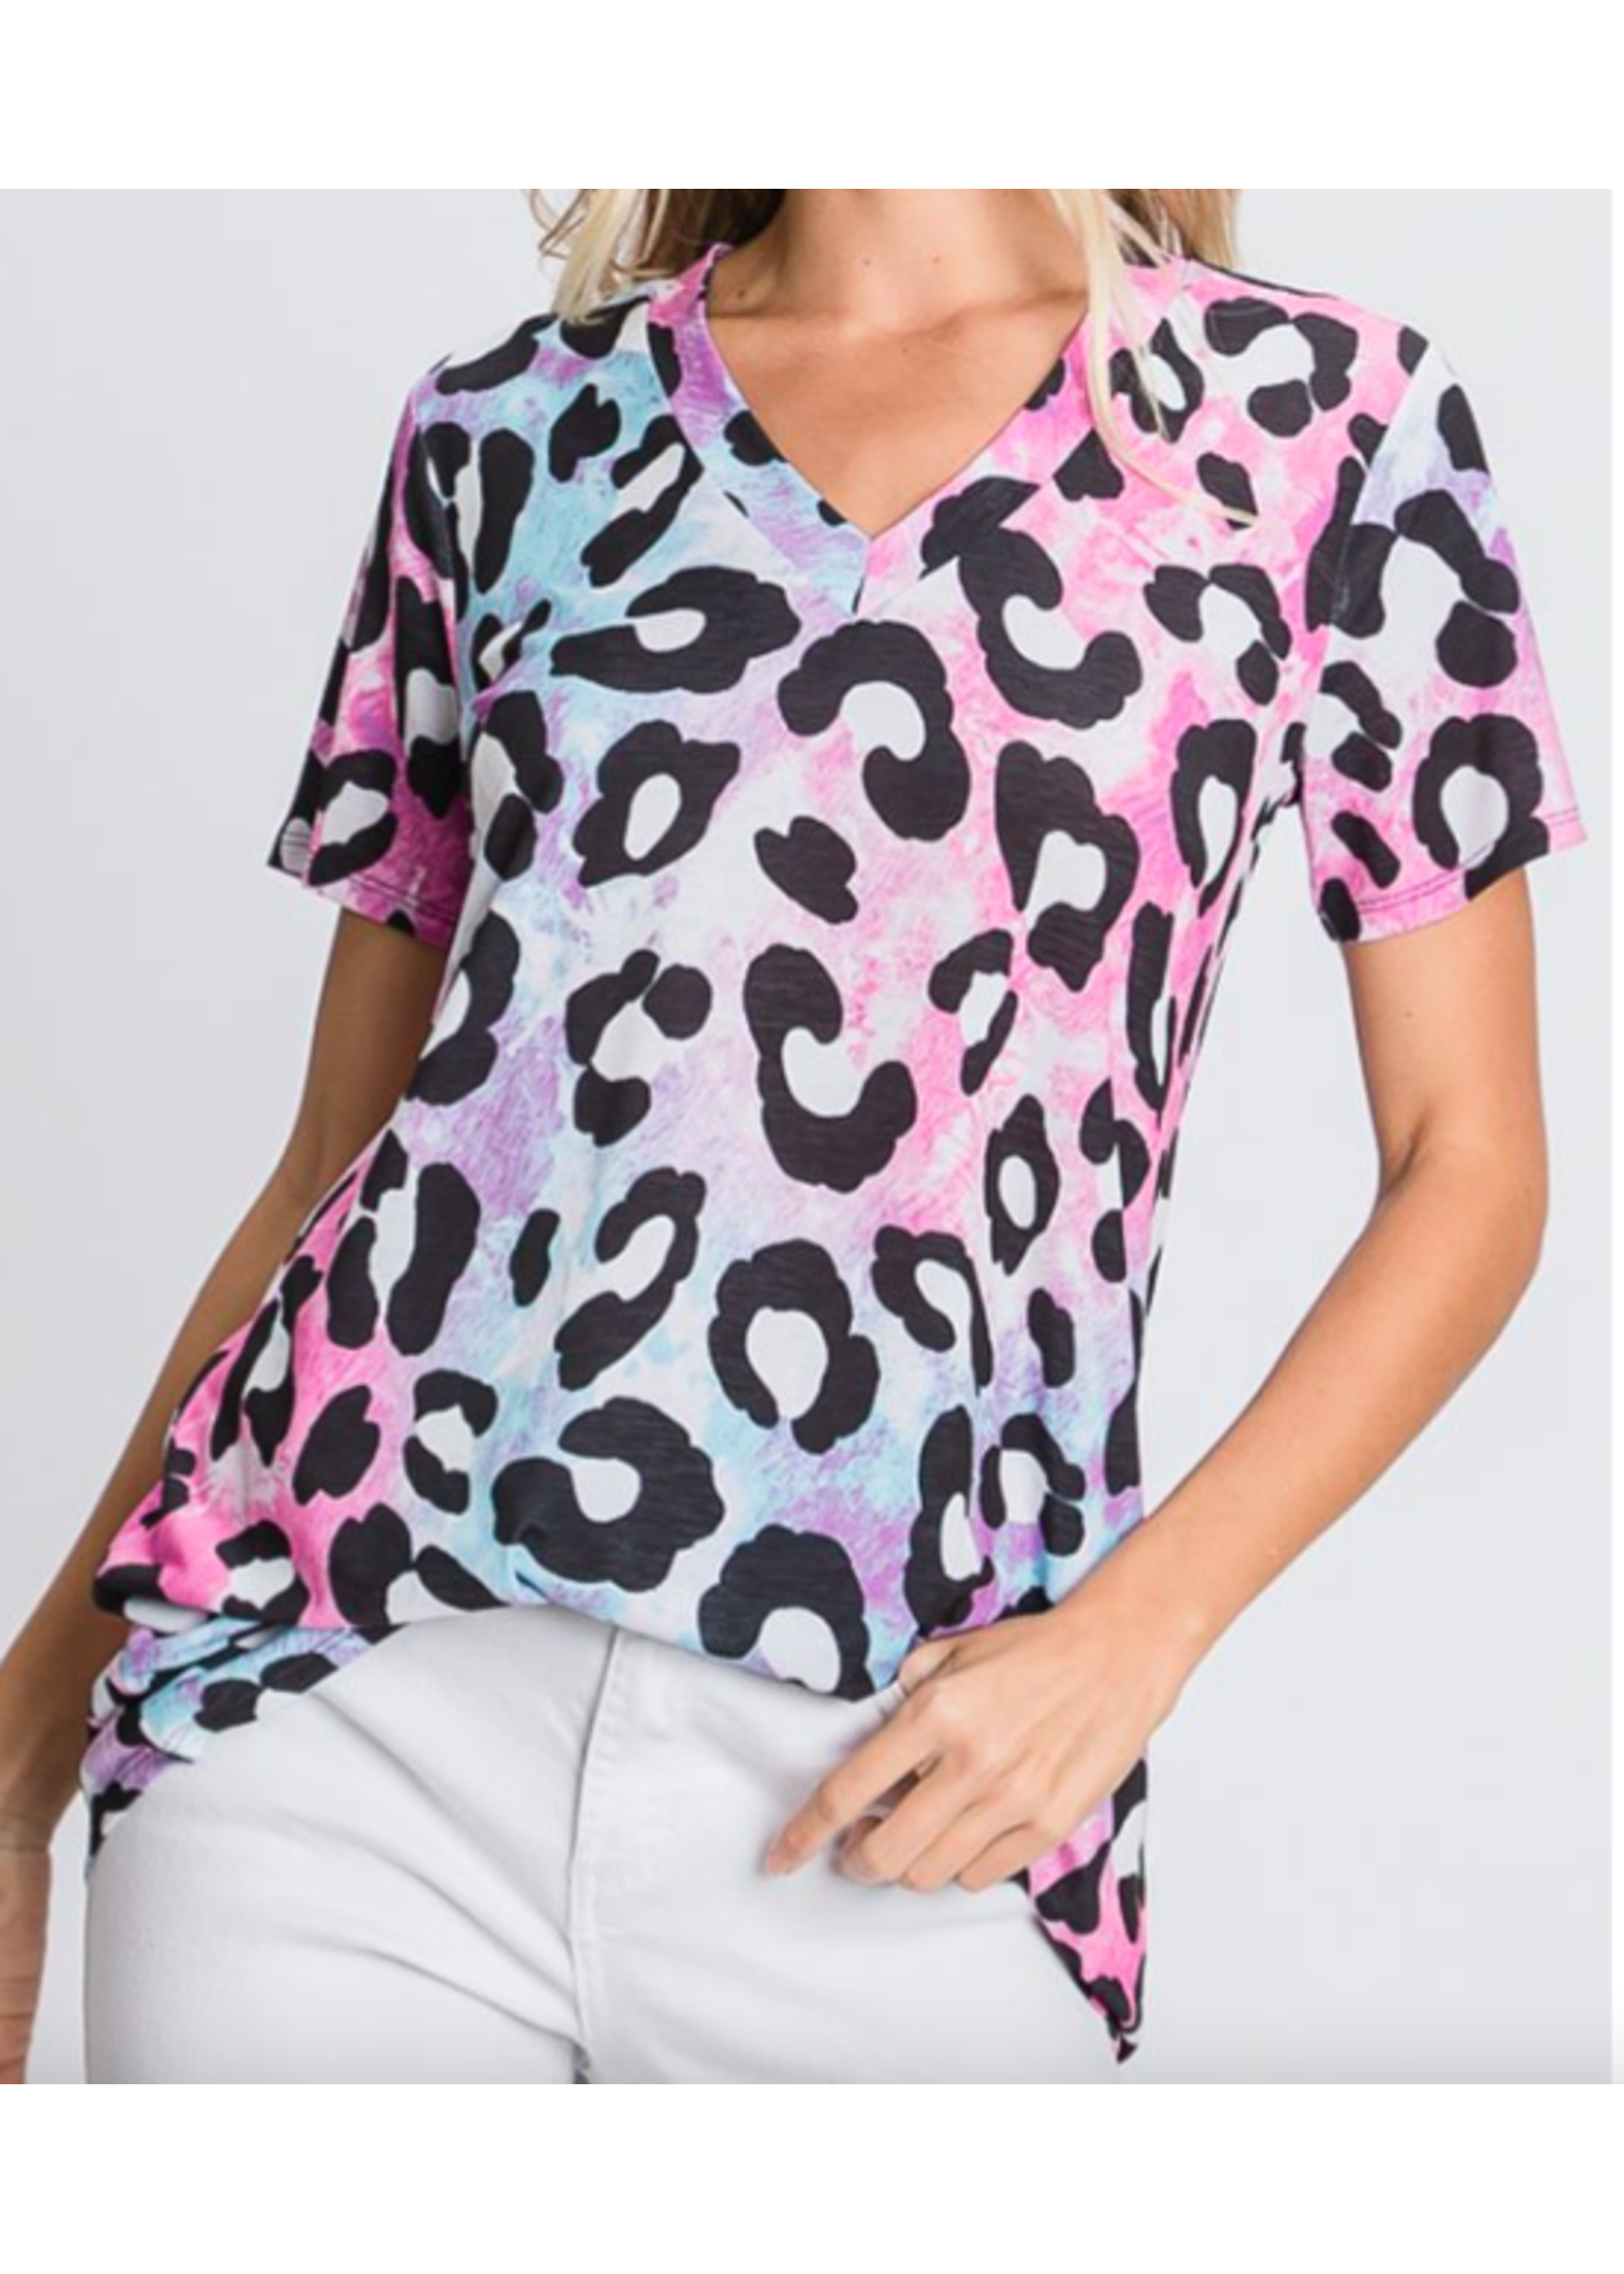 Multi colored leopard print